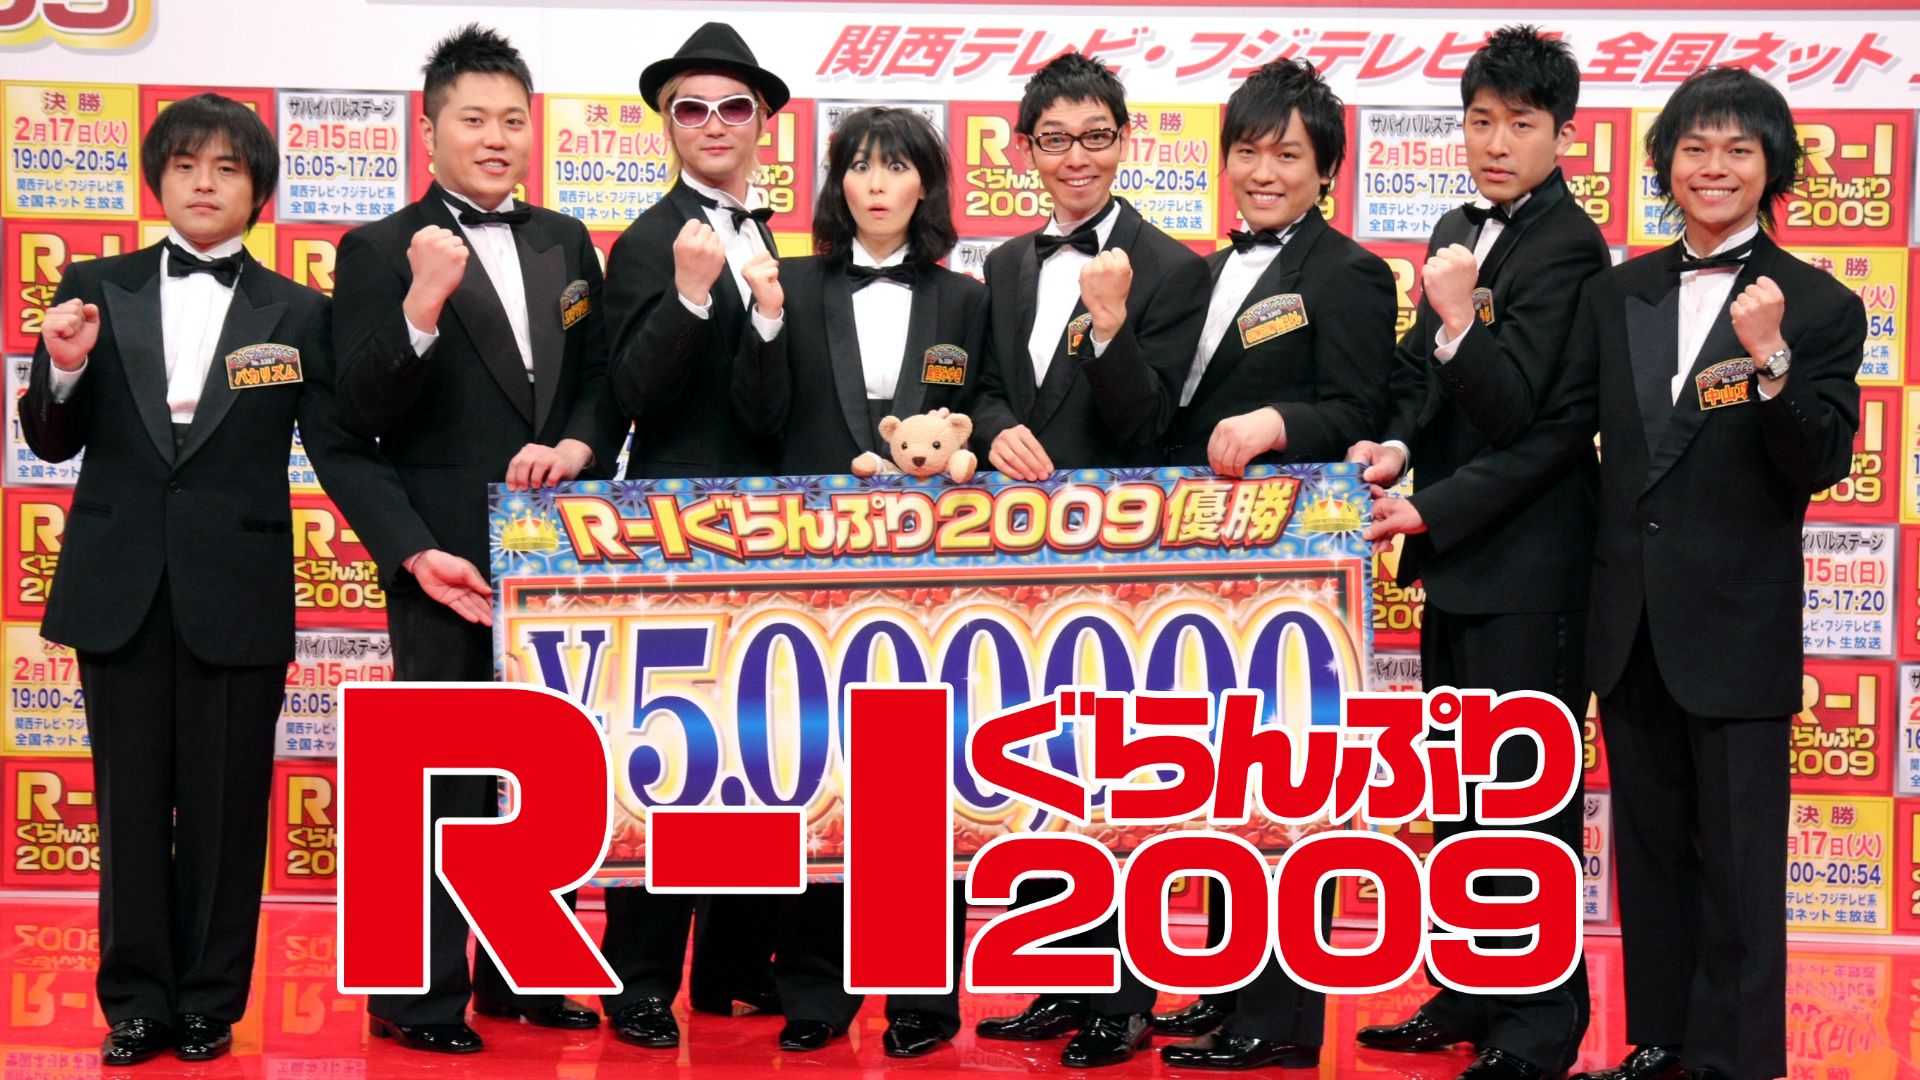 R-1 ぐらんぷり2009